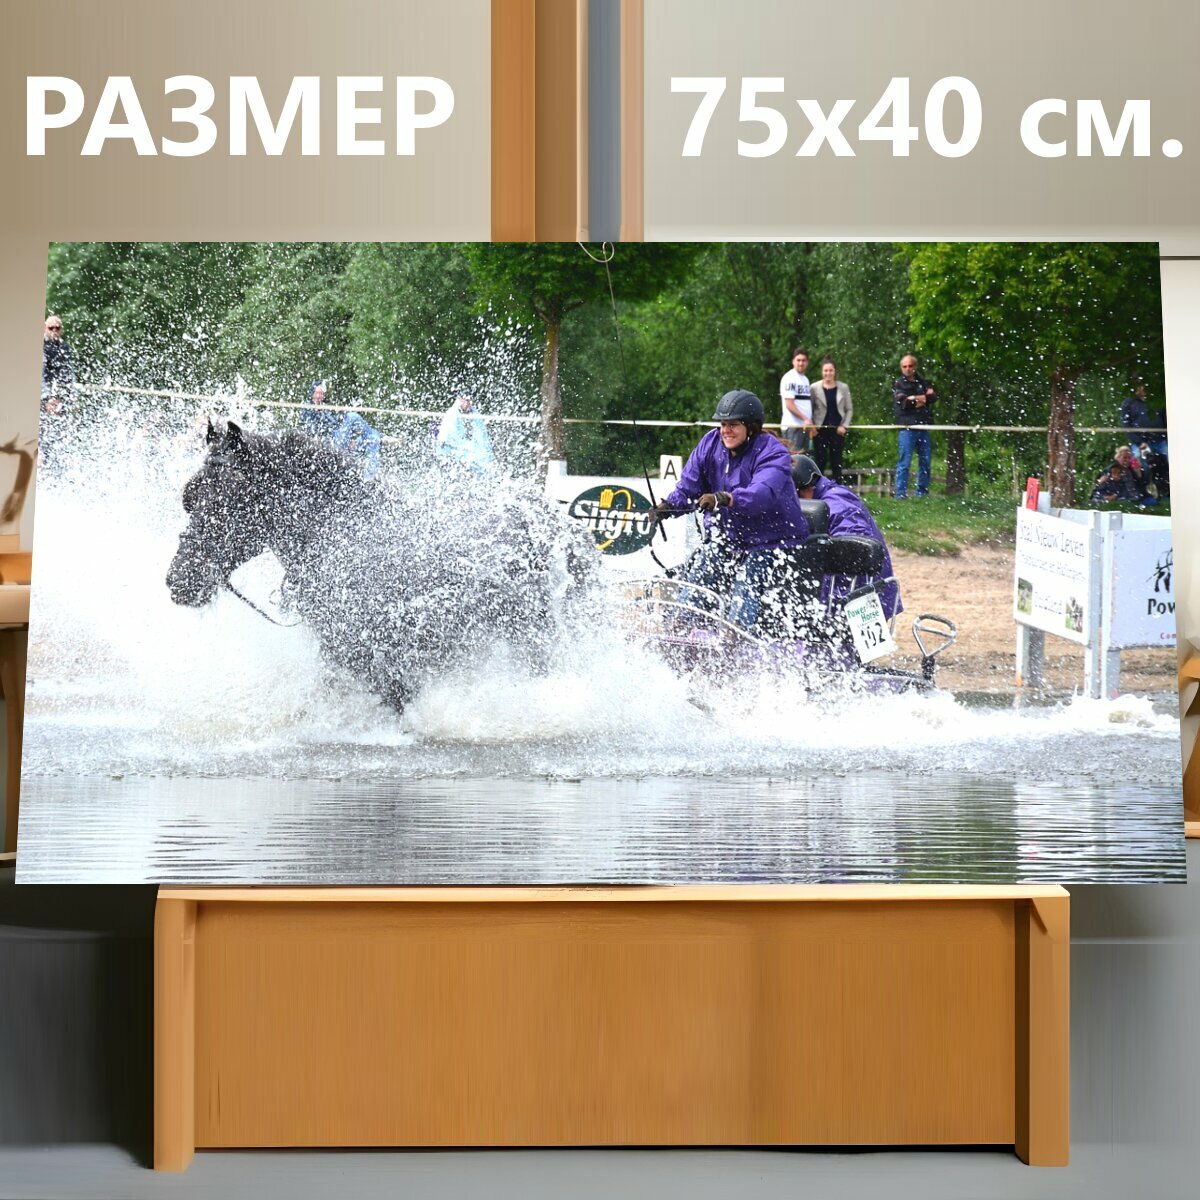 Картина на холсте "Спорт, конный спорт, ломовая лошадь" на подрамнике 75х40 см. для интерьера